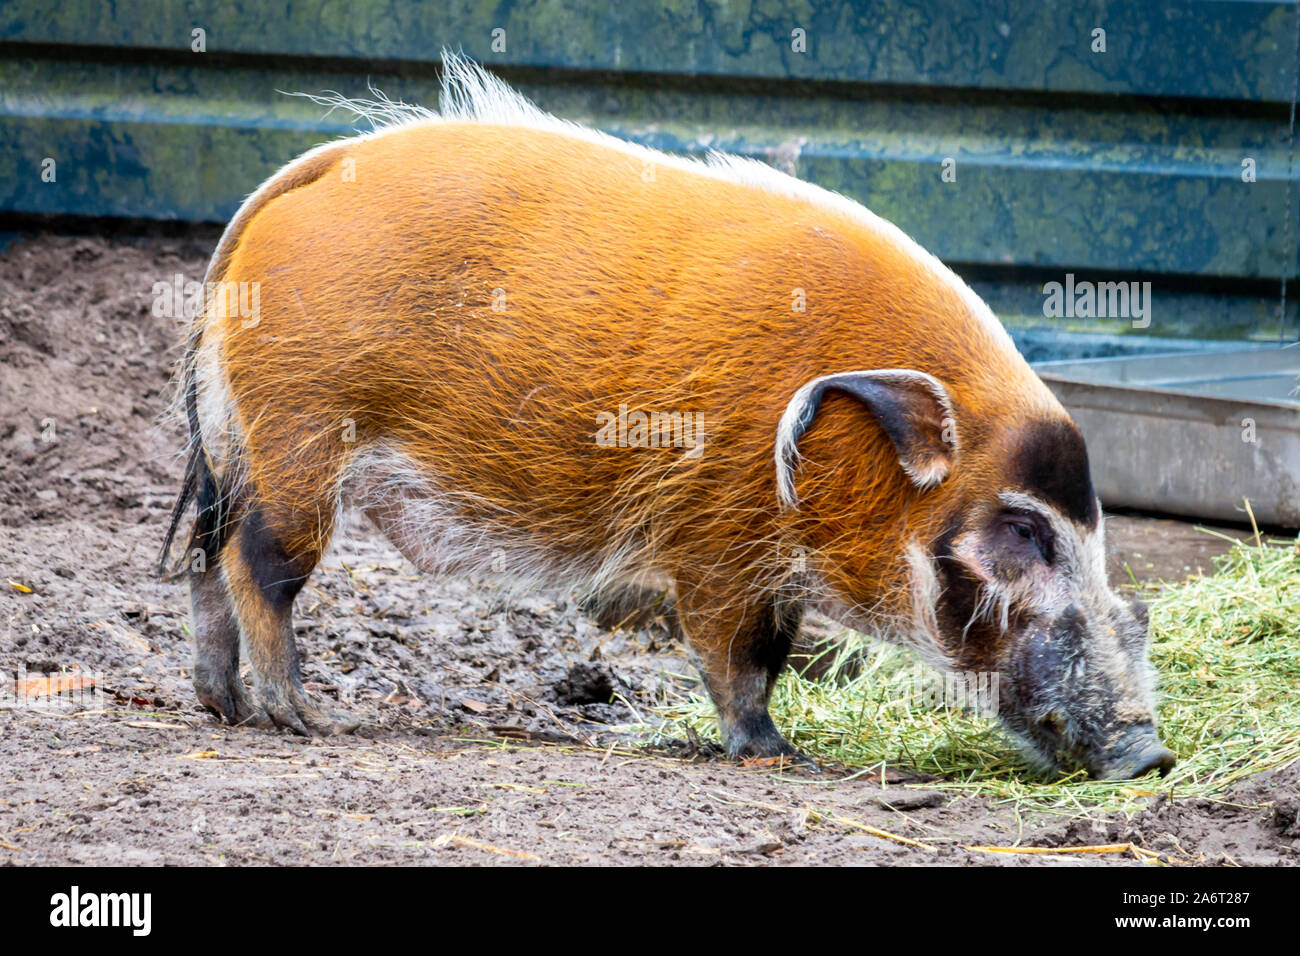 Schöne Red River Hog, ein Schwein mit sehr schönen Farben in der Regel in West- und Südafrika gesehen Stockfoto